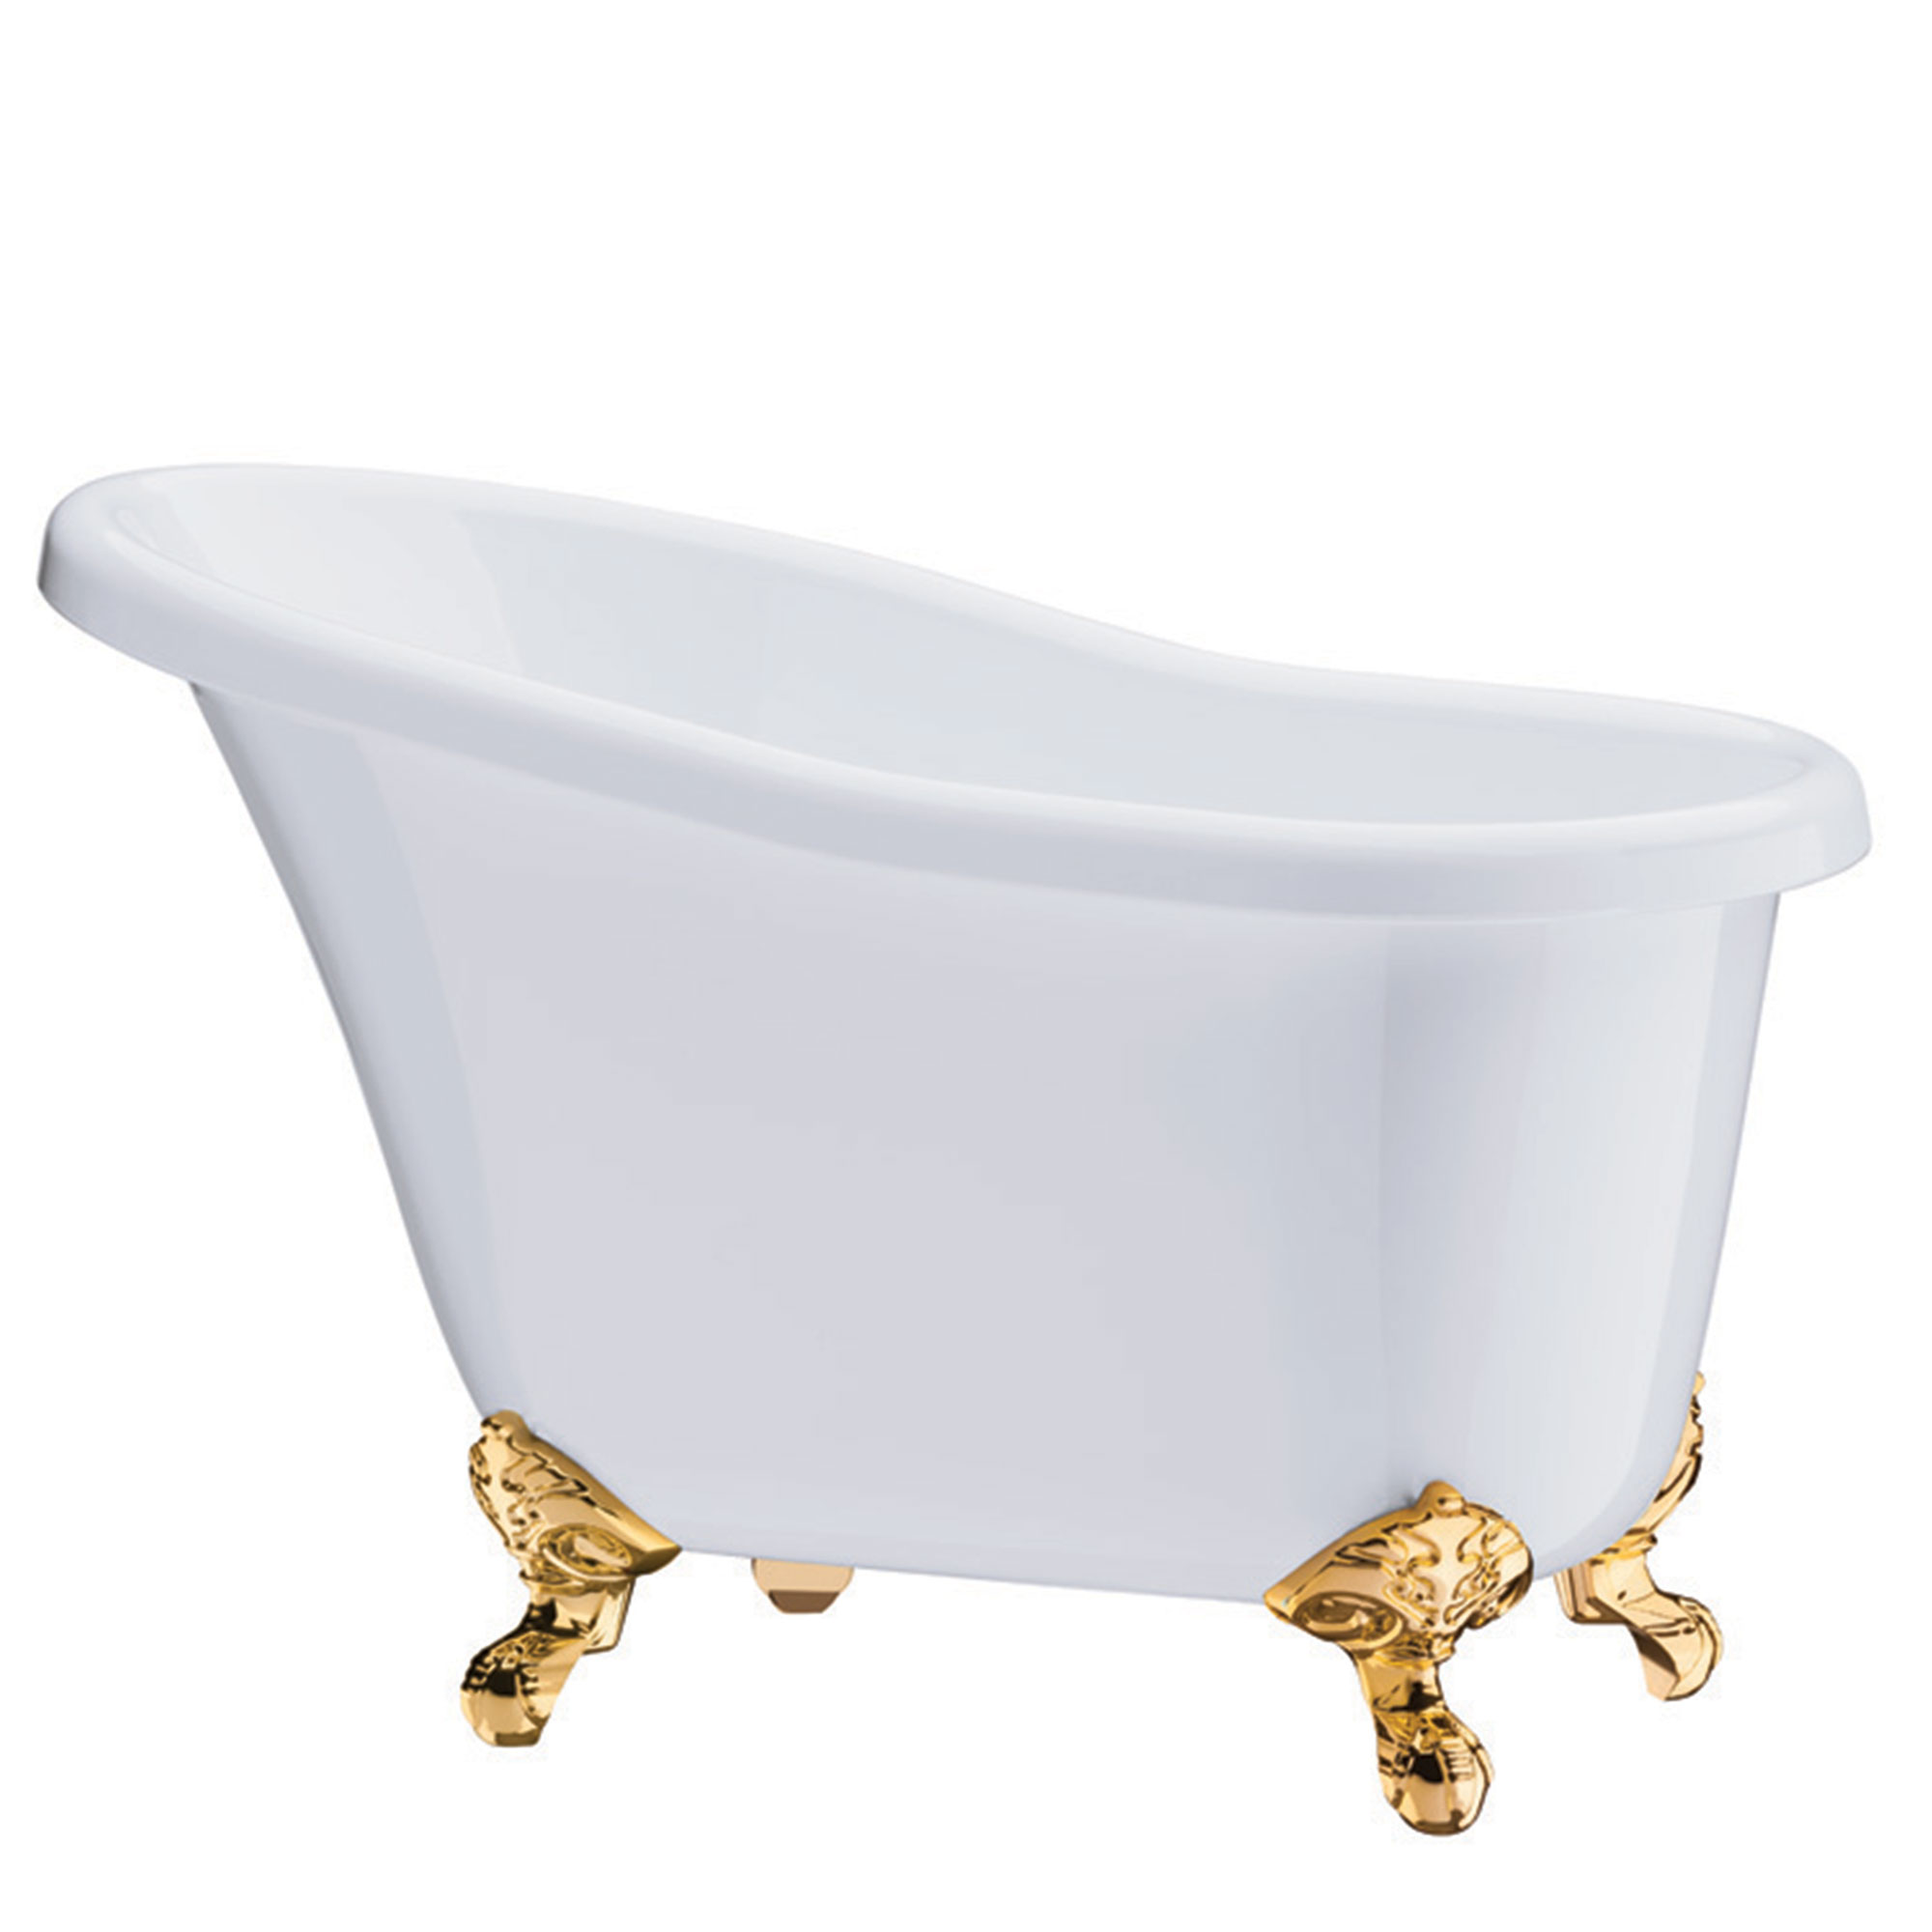 bathtub champagne bucket